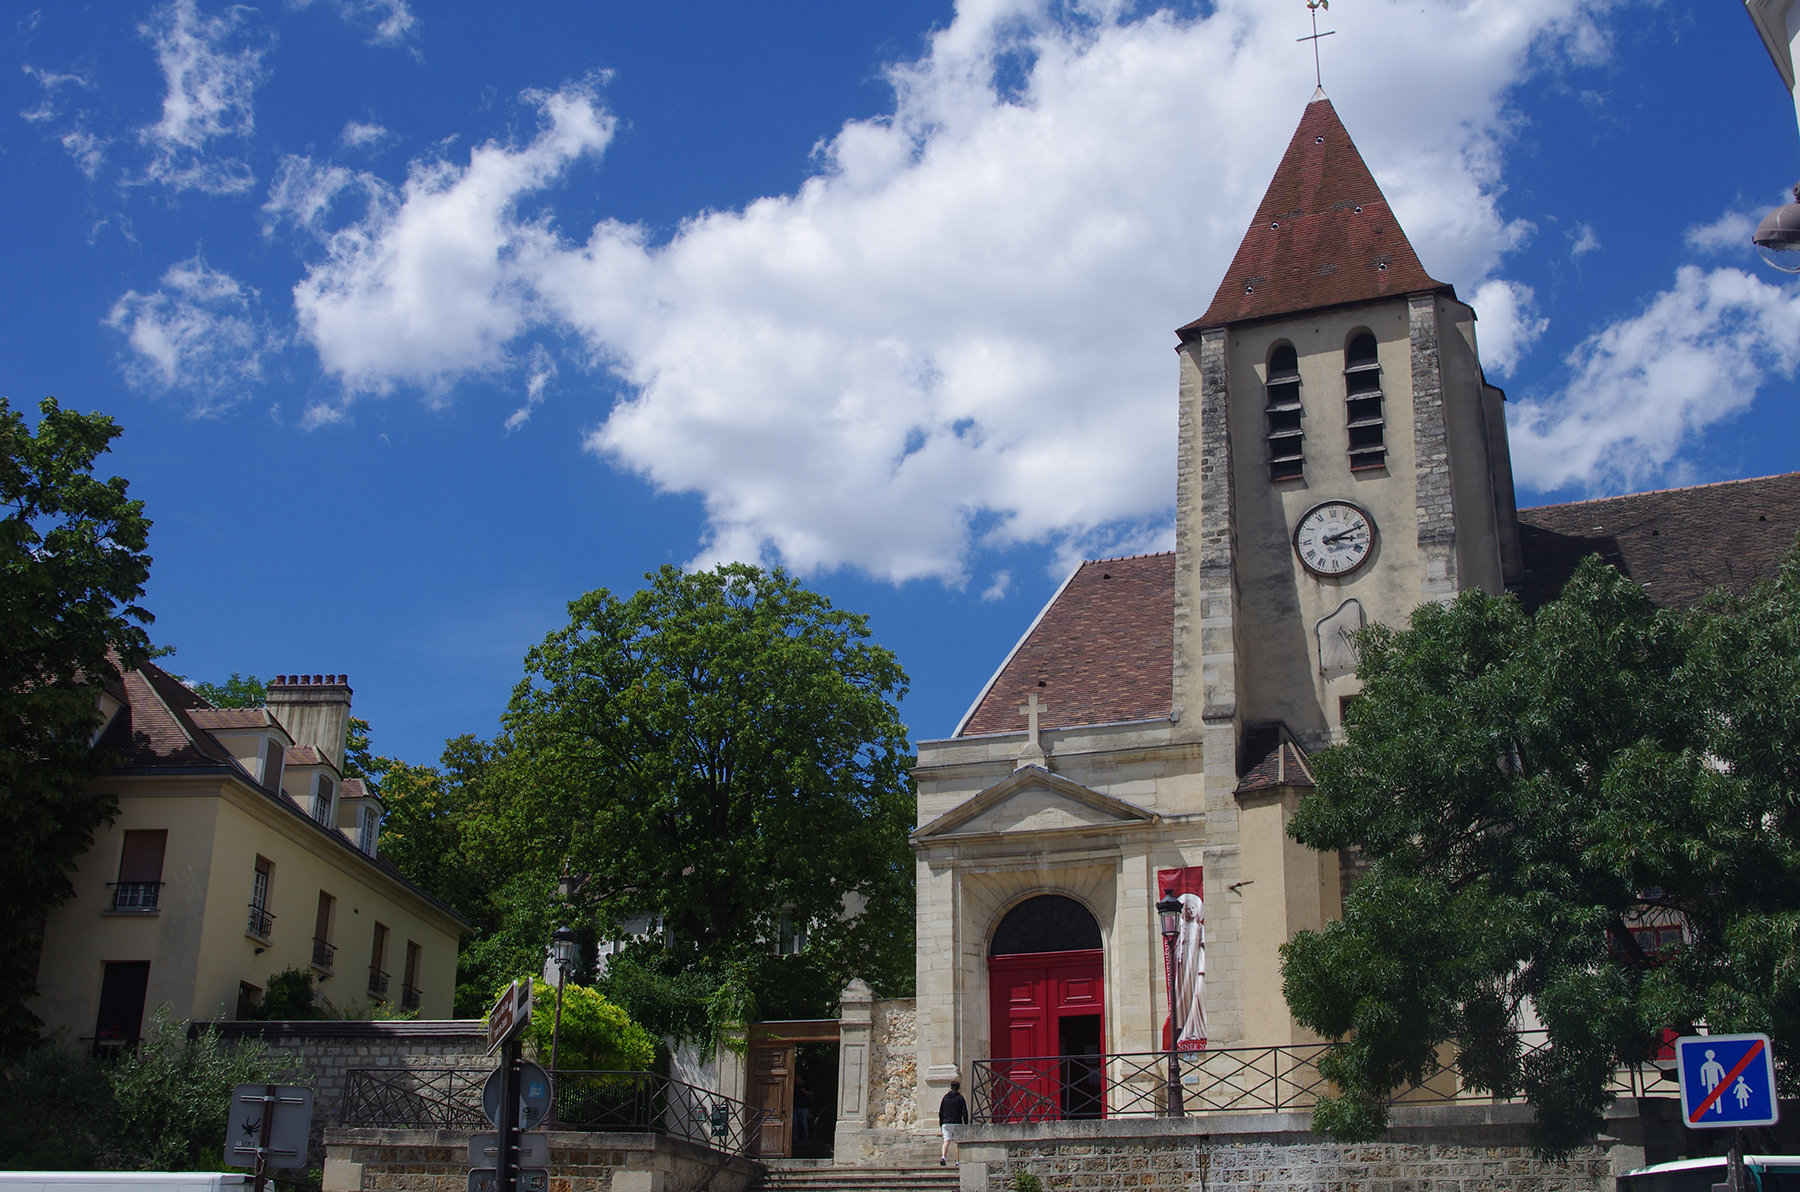 Salive, food tours à Paris – Village Charonne – L'église Saint-Germain de Charonne